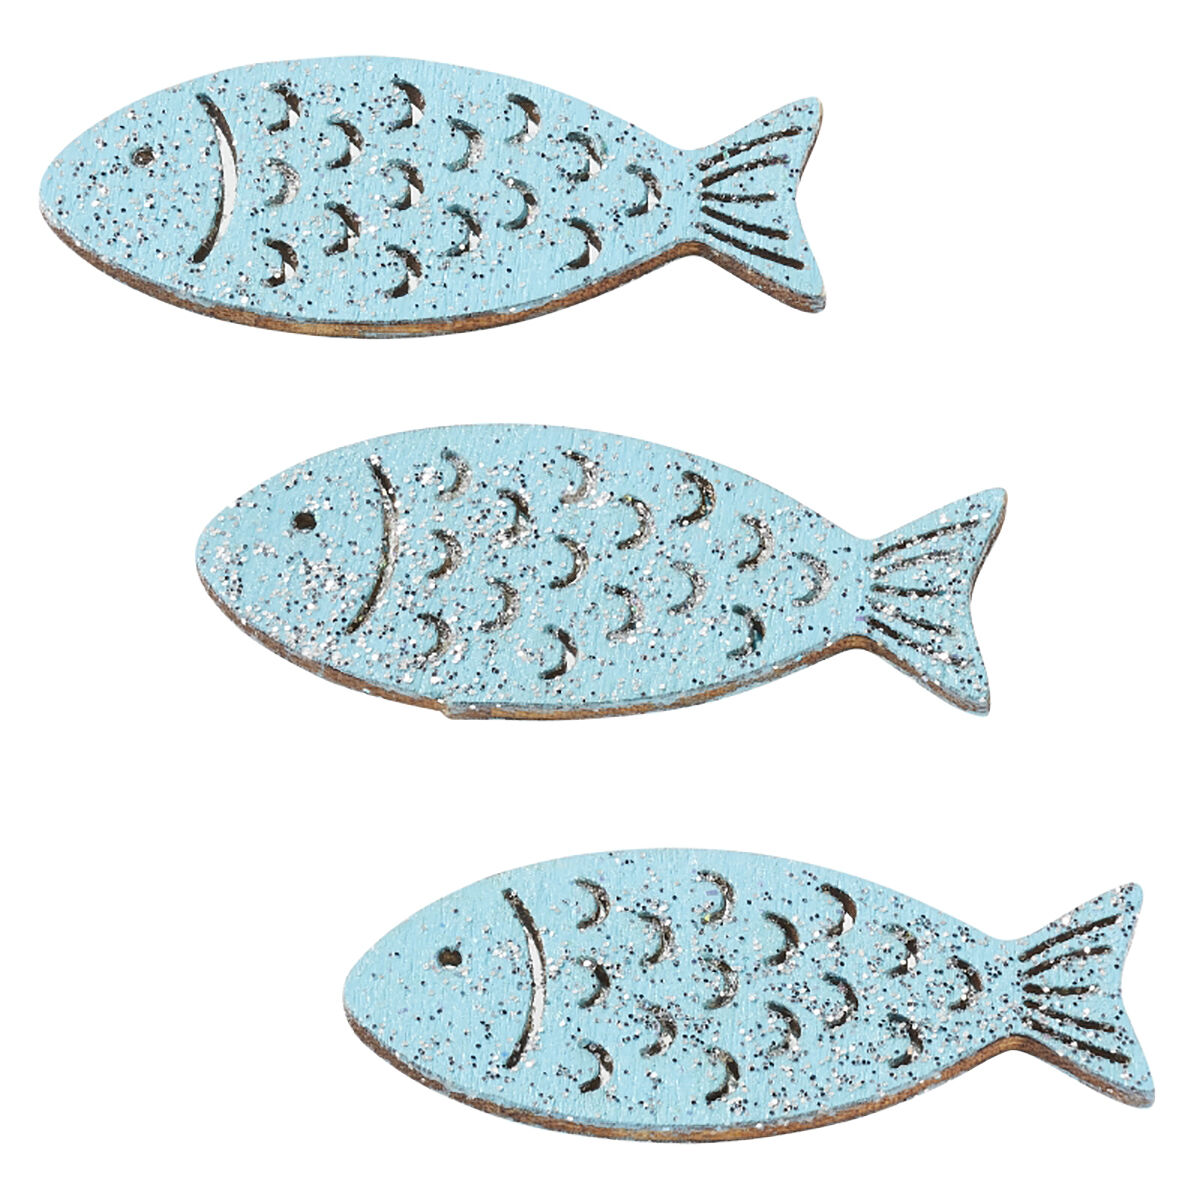 NEU Holz-Fische mit Glimmer, 40 mm, Beutel mit 6 Stck, hellblau